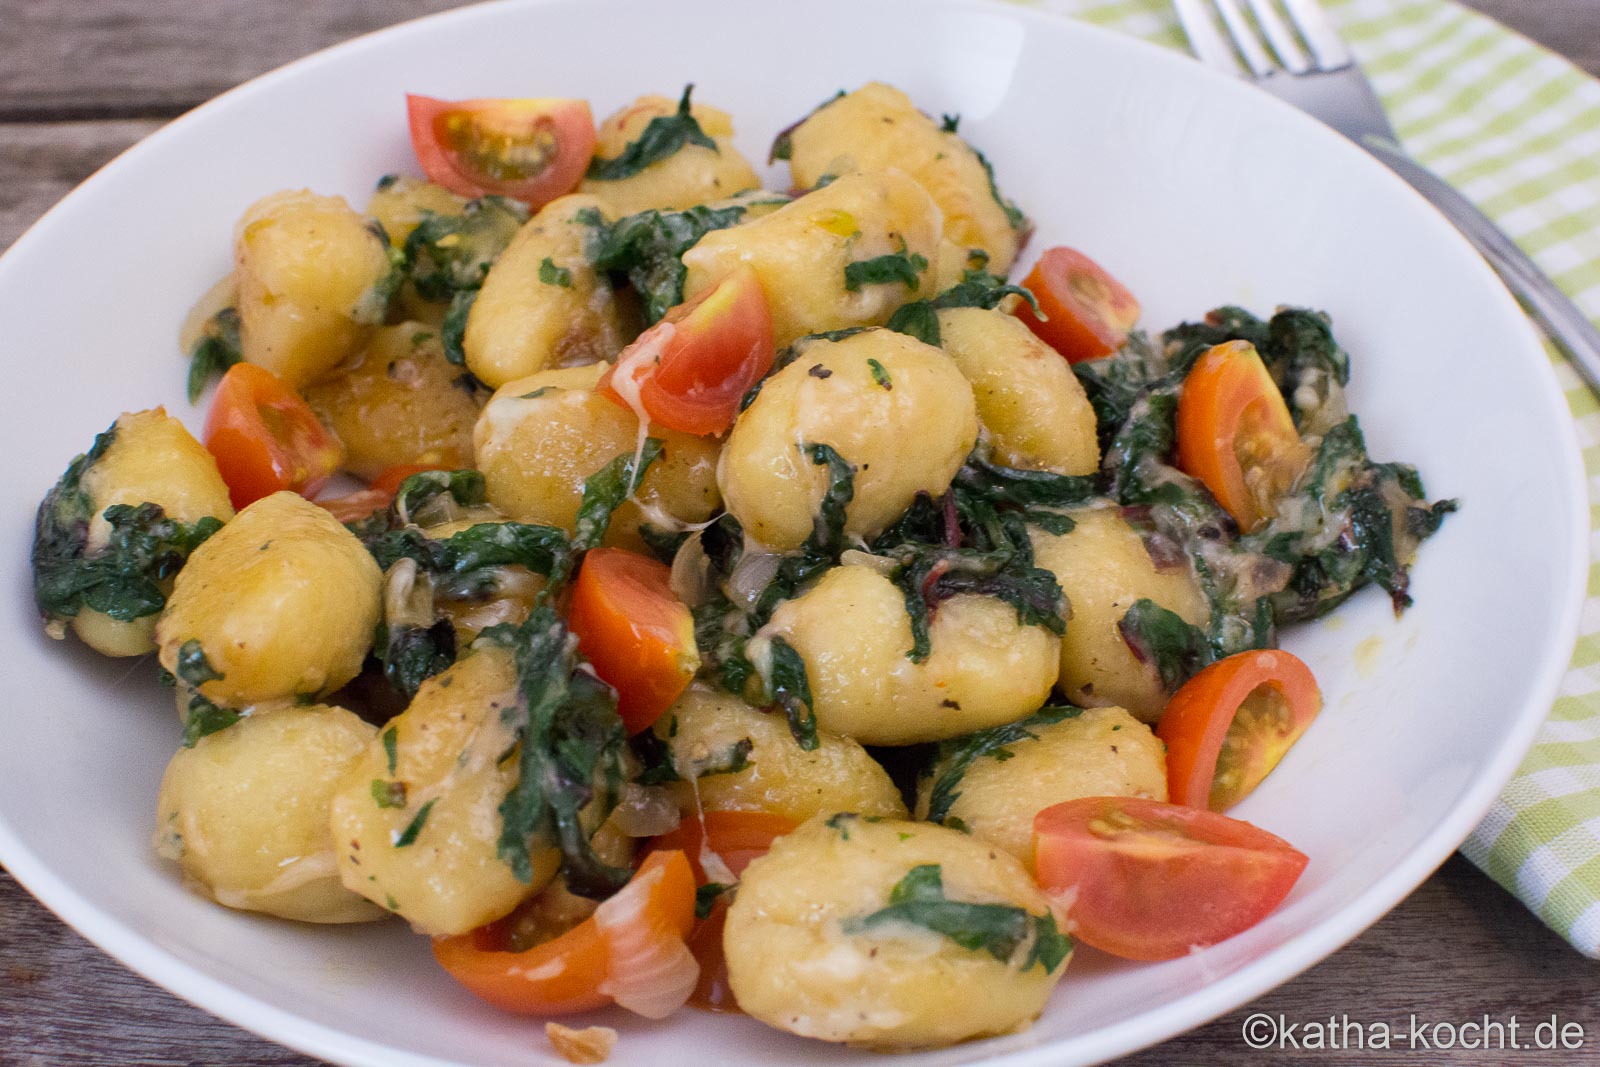 Gnocchi-Pfanne mit Spinat, Tomaten und Käse - Katha-kocht!